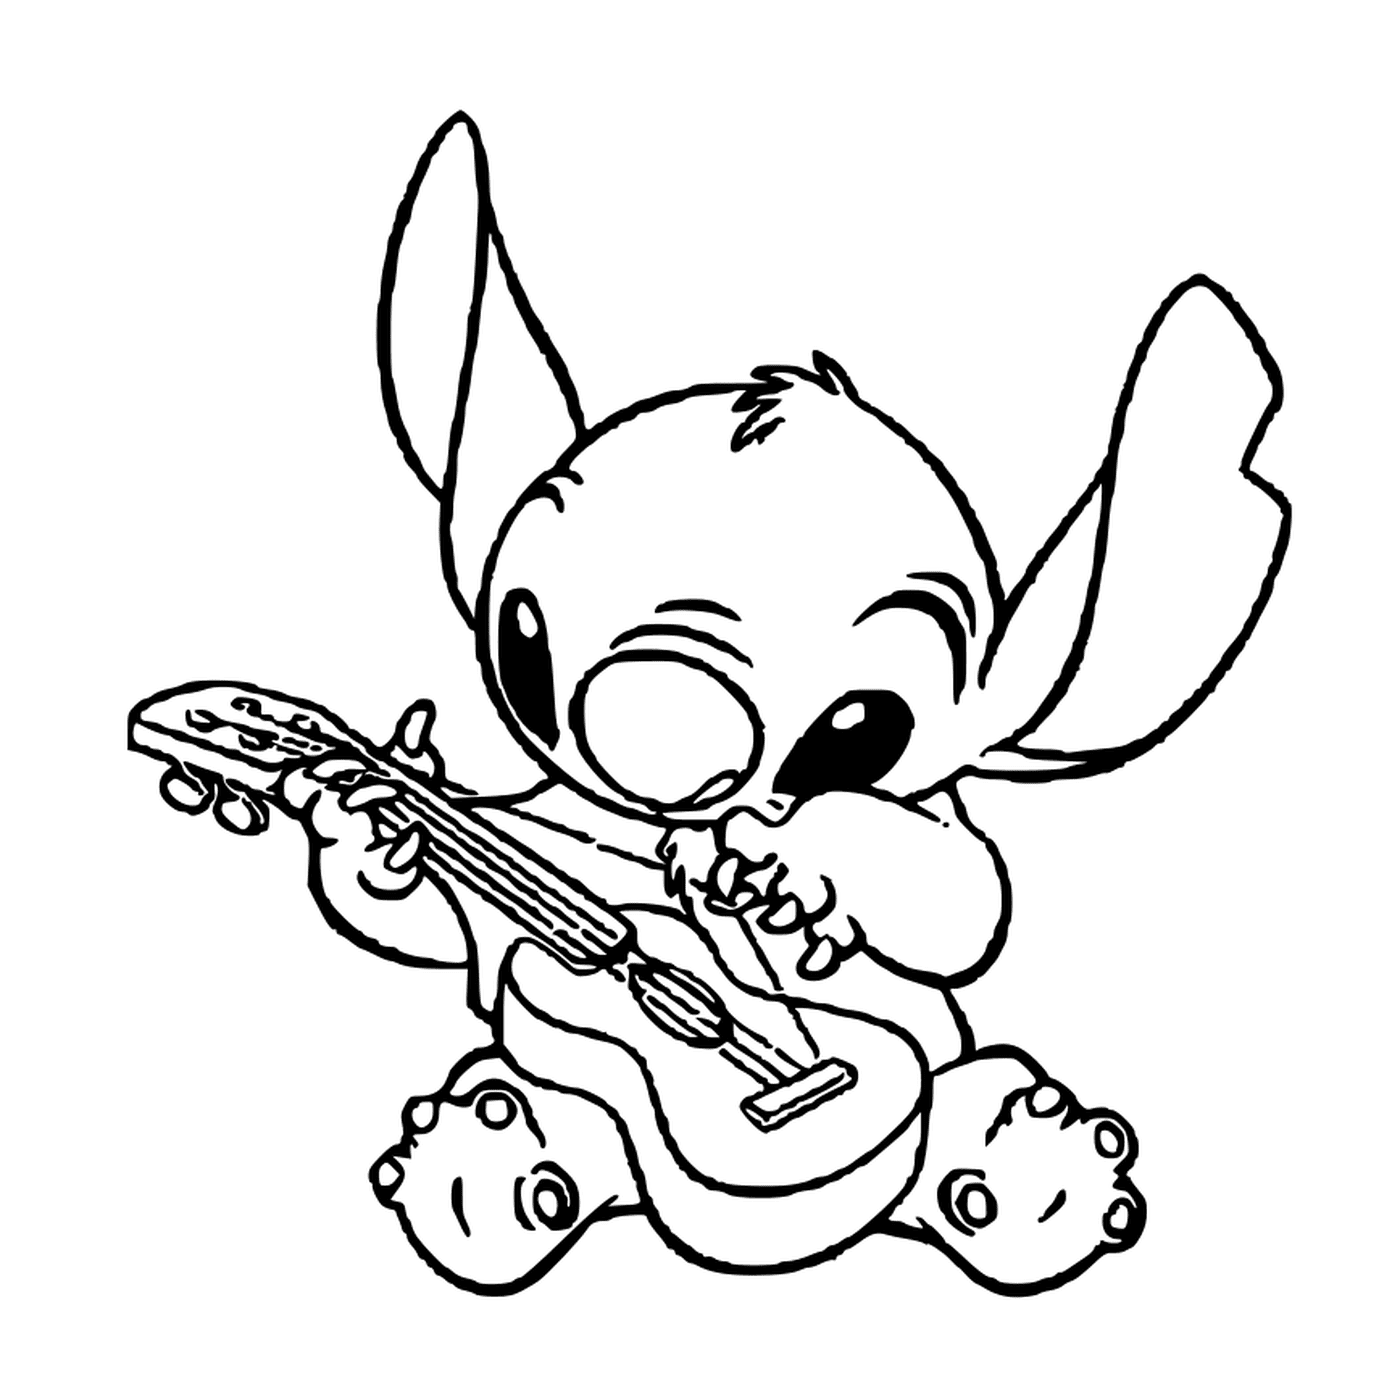  Stitch toca guitarra 